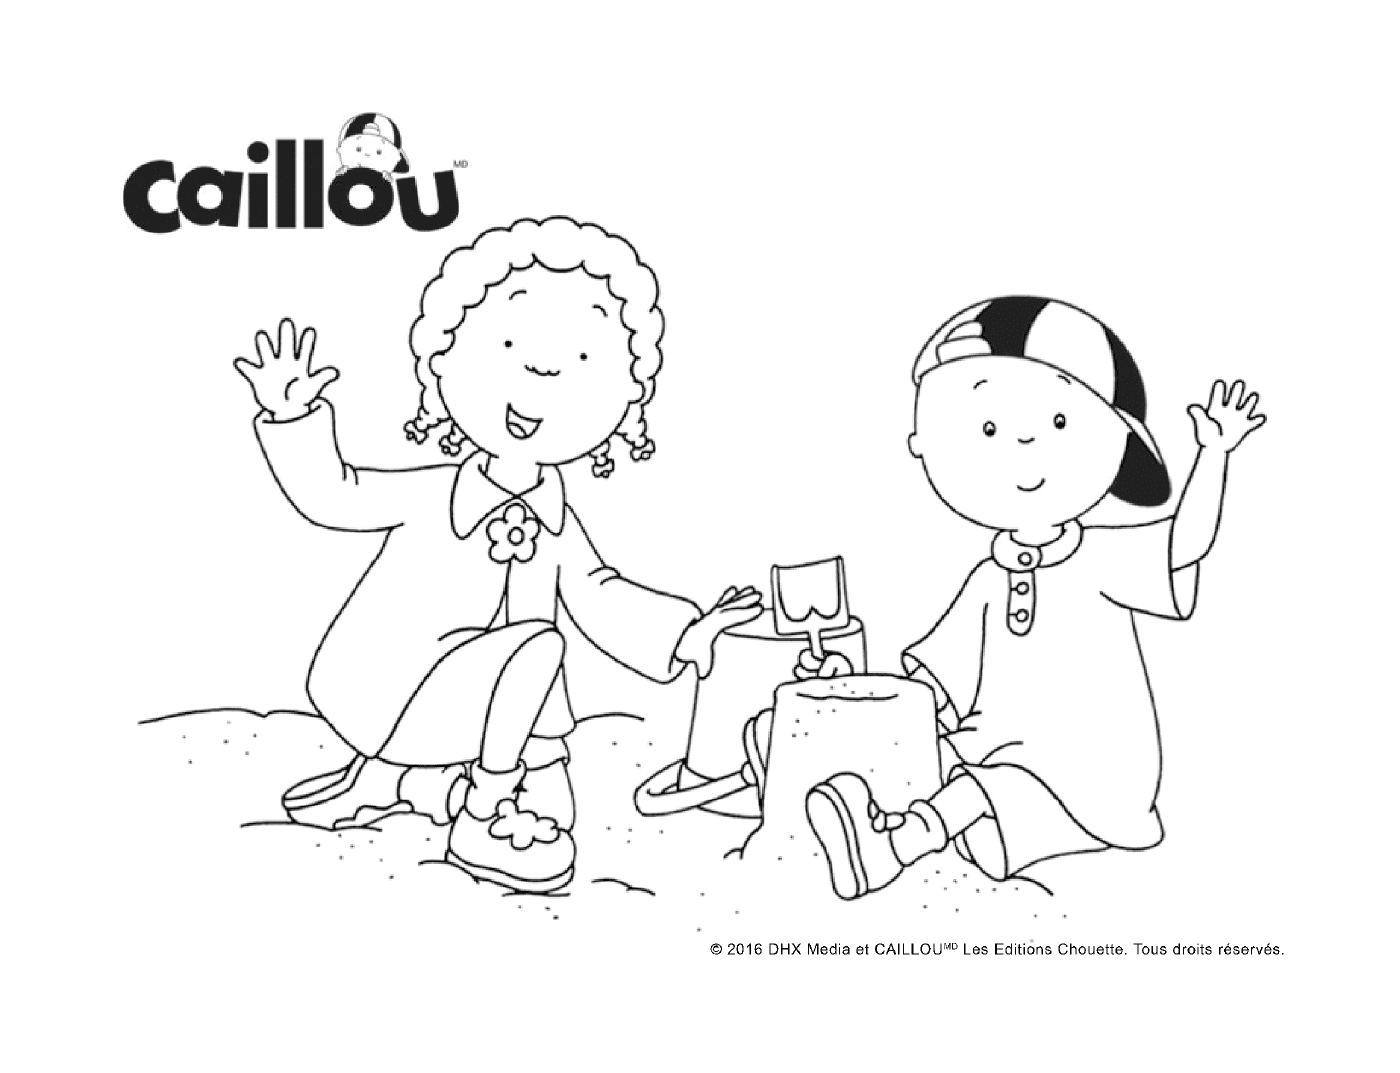  Internationaler Tag der Freundschaft mit Caillou und Clementine 